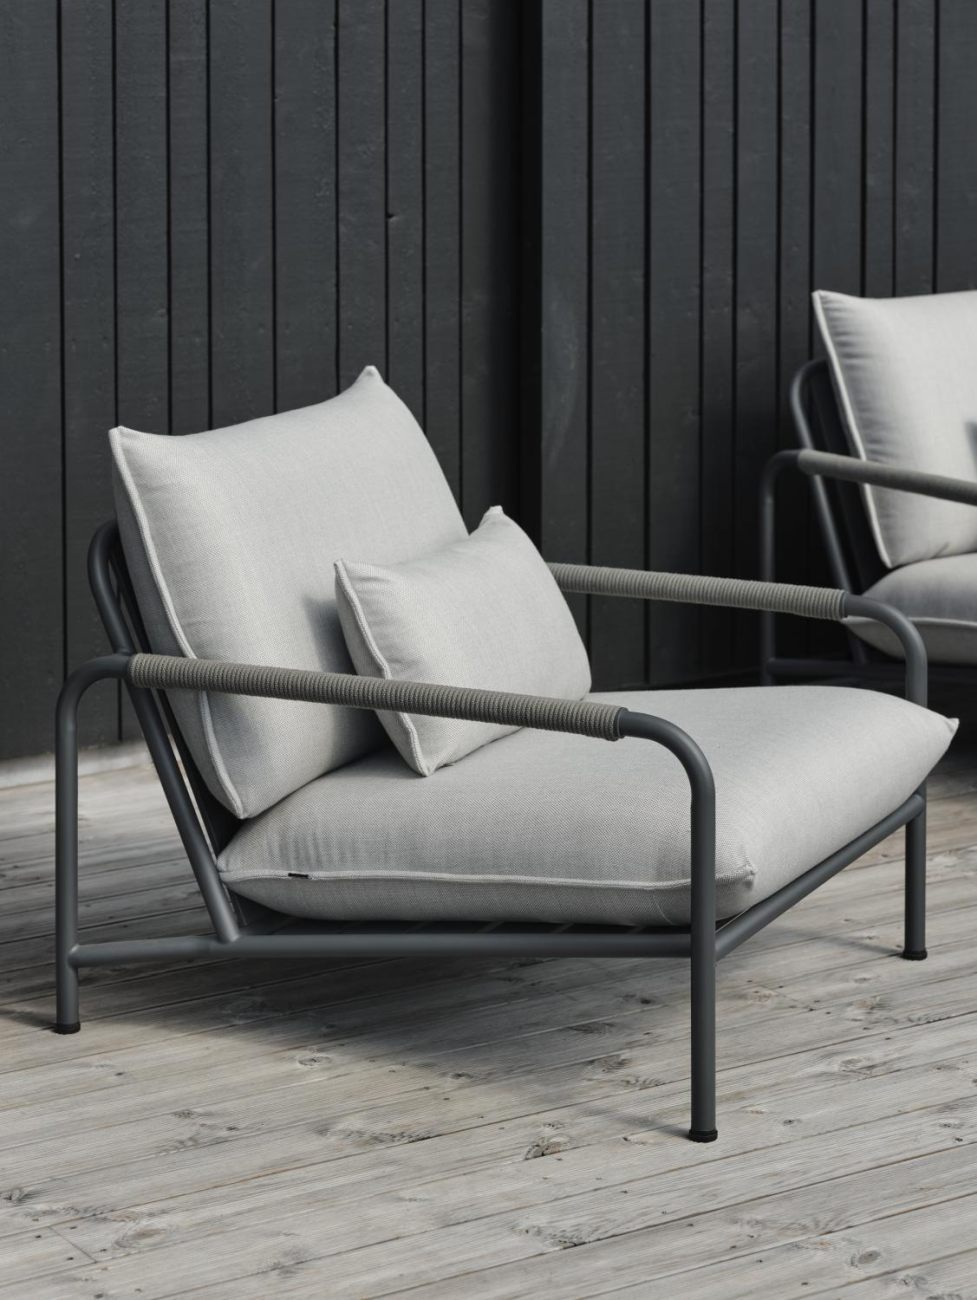 Der Gartensessel Lerberget überzeugt mit seinem modernen Design. Gefertigt wurde er aus Stoff, welcher einen grauen Farbton besitzt. Das Gestell ist aus Metall und hat eine Anthrazit Farbe. Die Sitzhöhe des Sessels beträgt 42 cm.